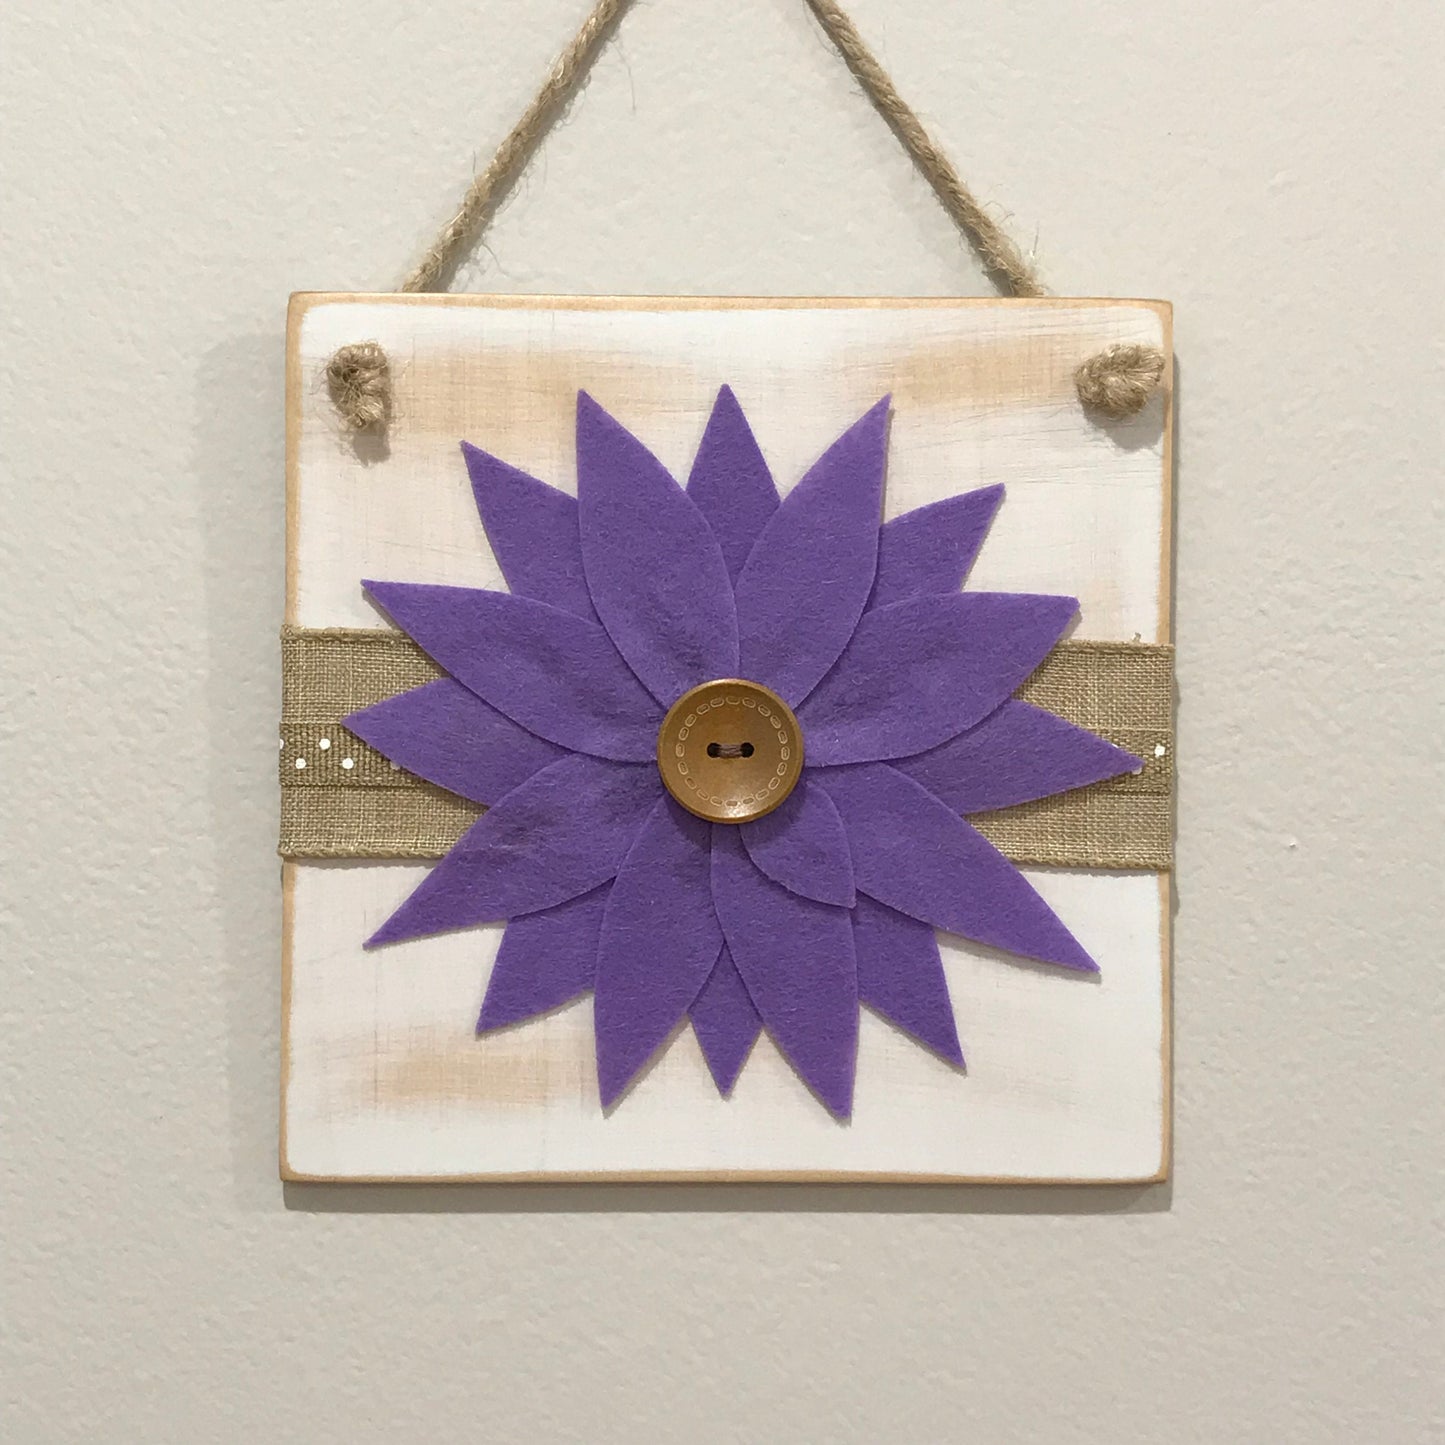 Felt Flower Wall Decor - White Tile with Purple Flower